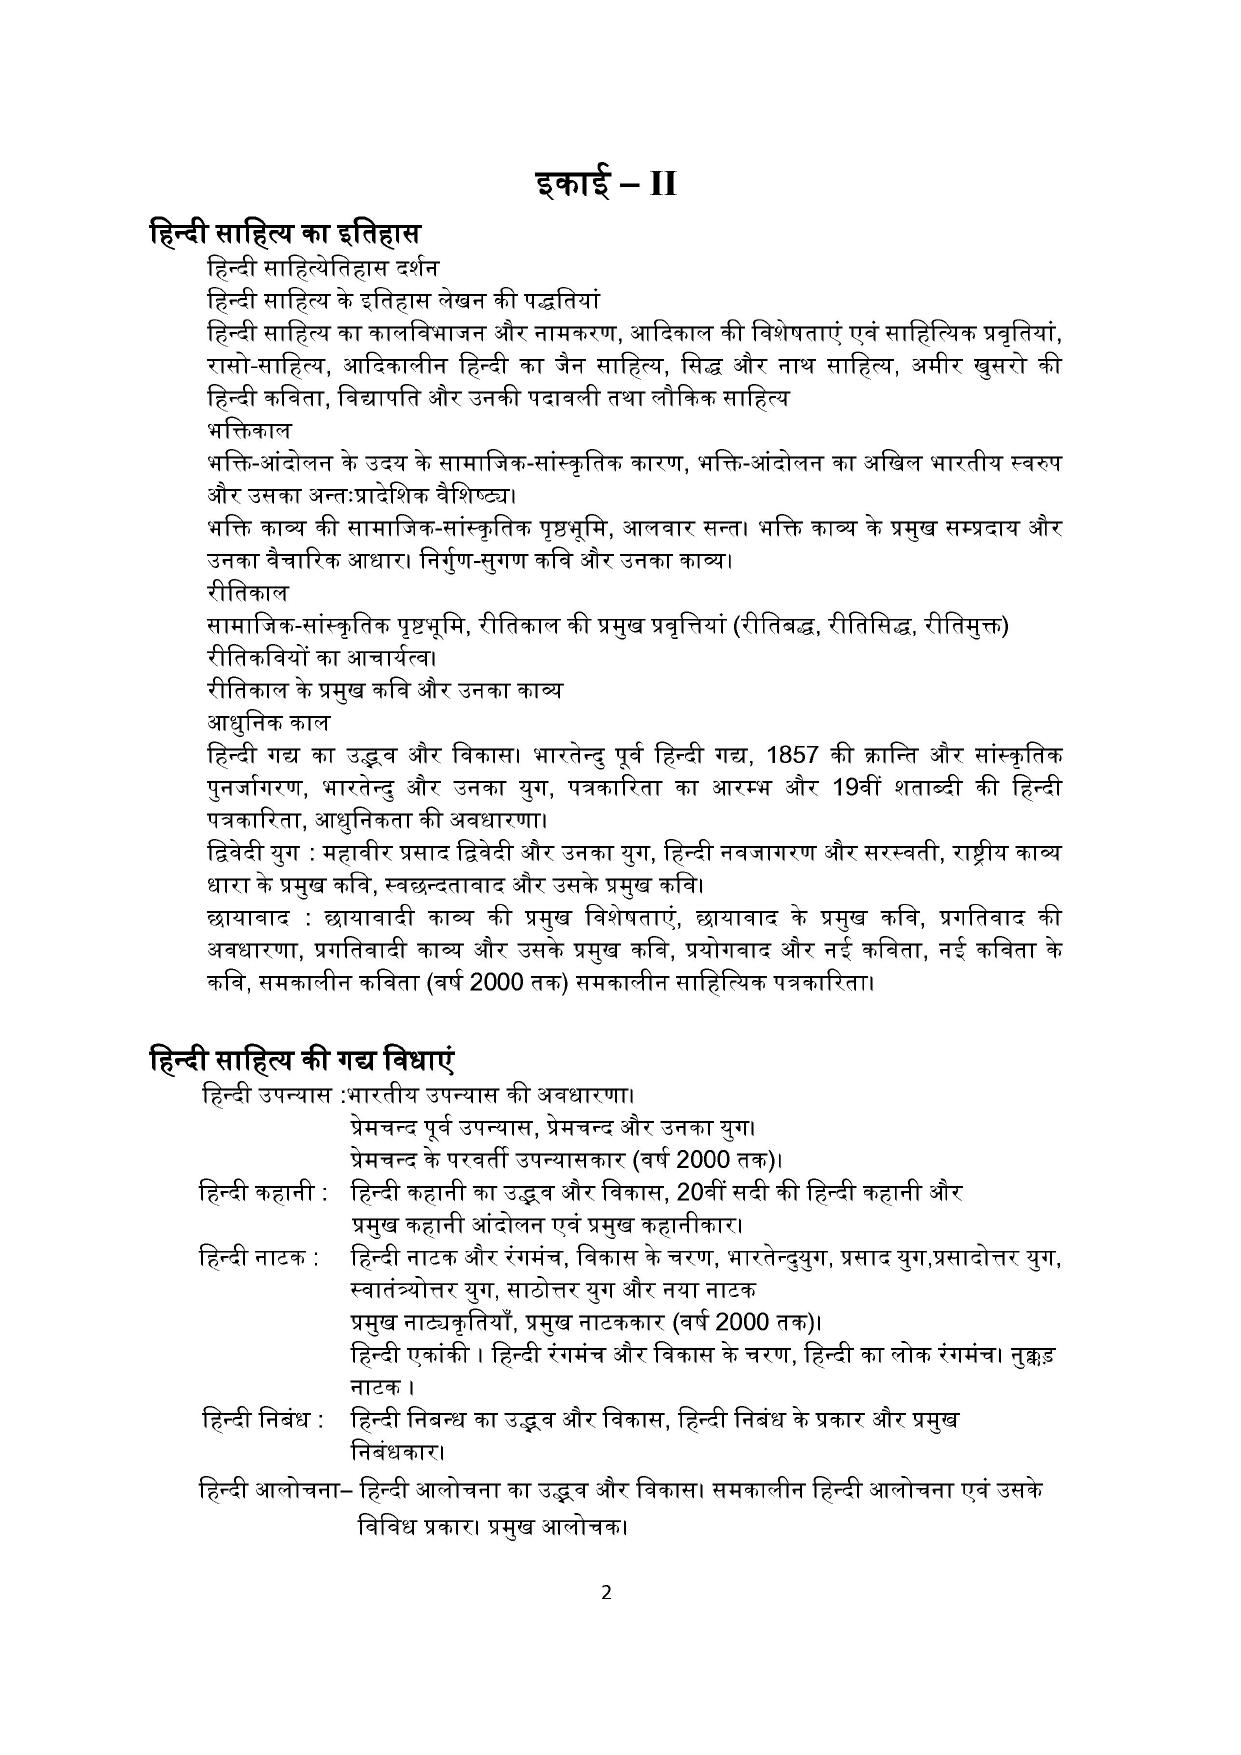 TNSET Syllabus - Hindi - Page 2